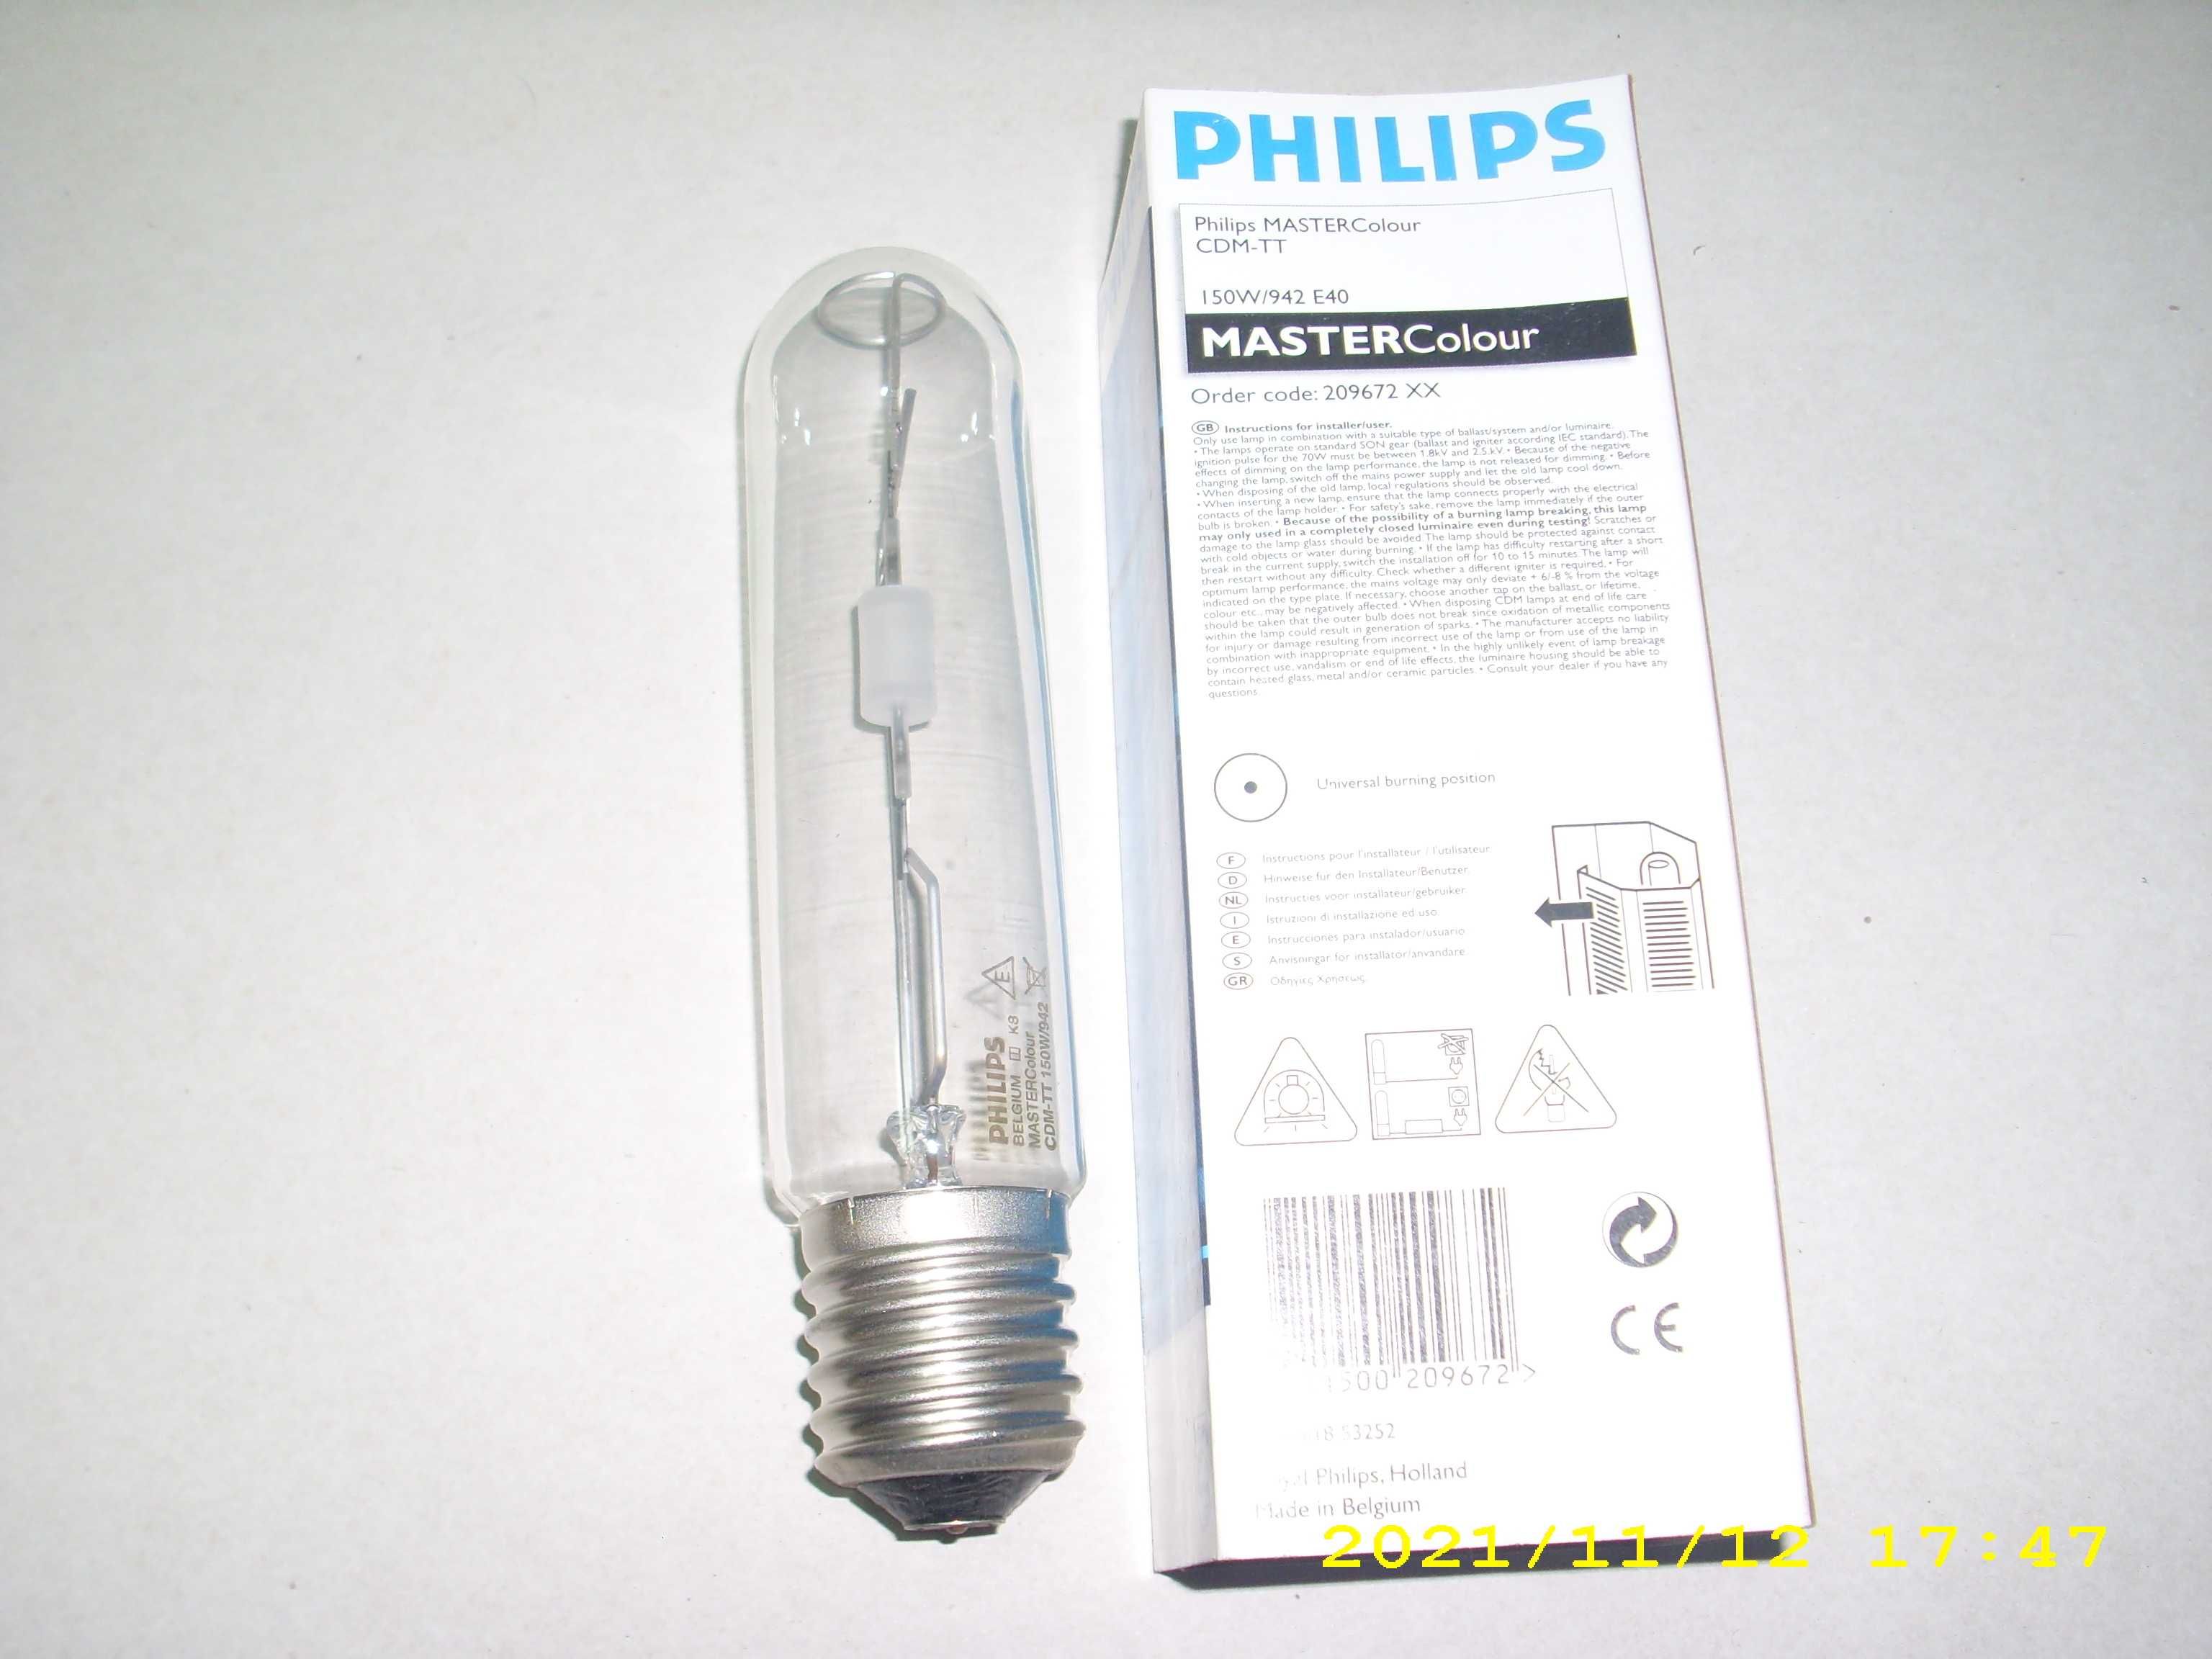 Philips CDM-TT 150W/942 E40 Mastercolour MH lampa